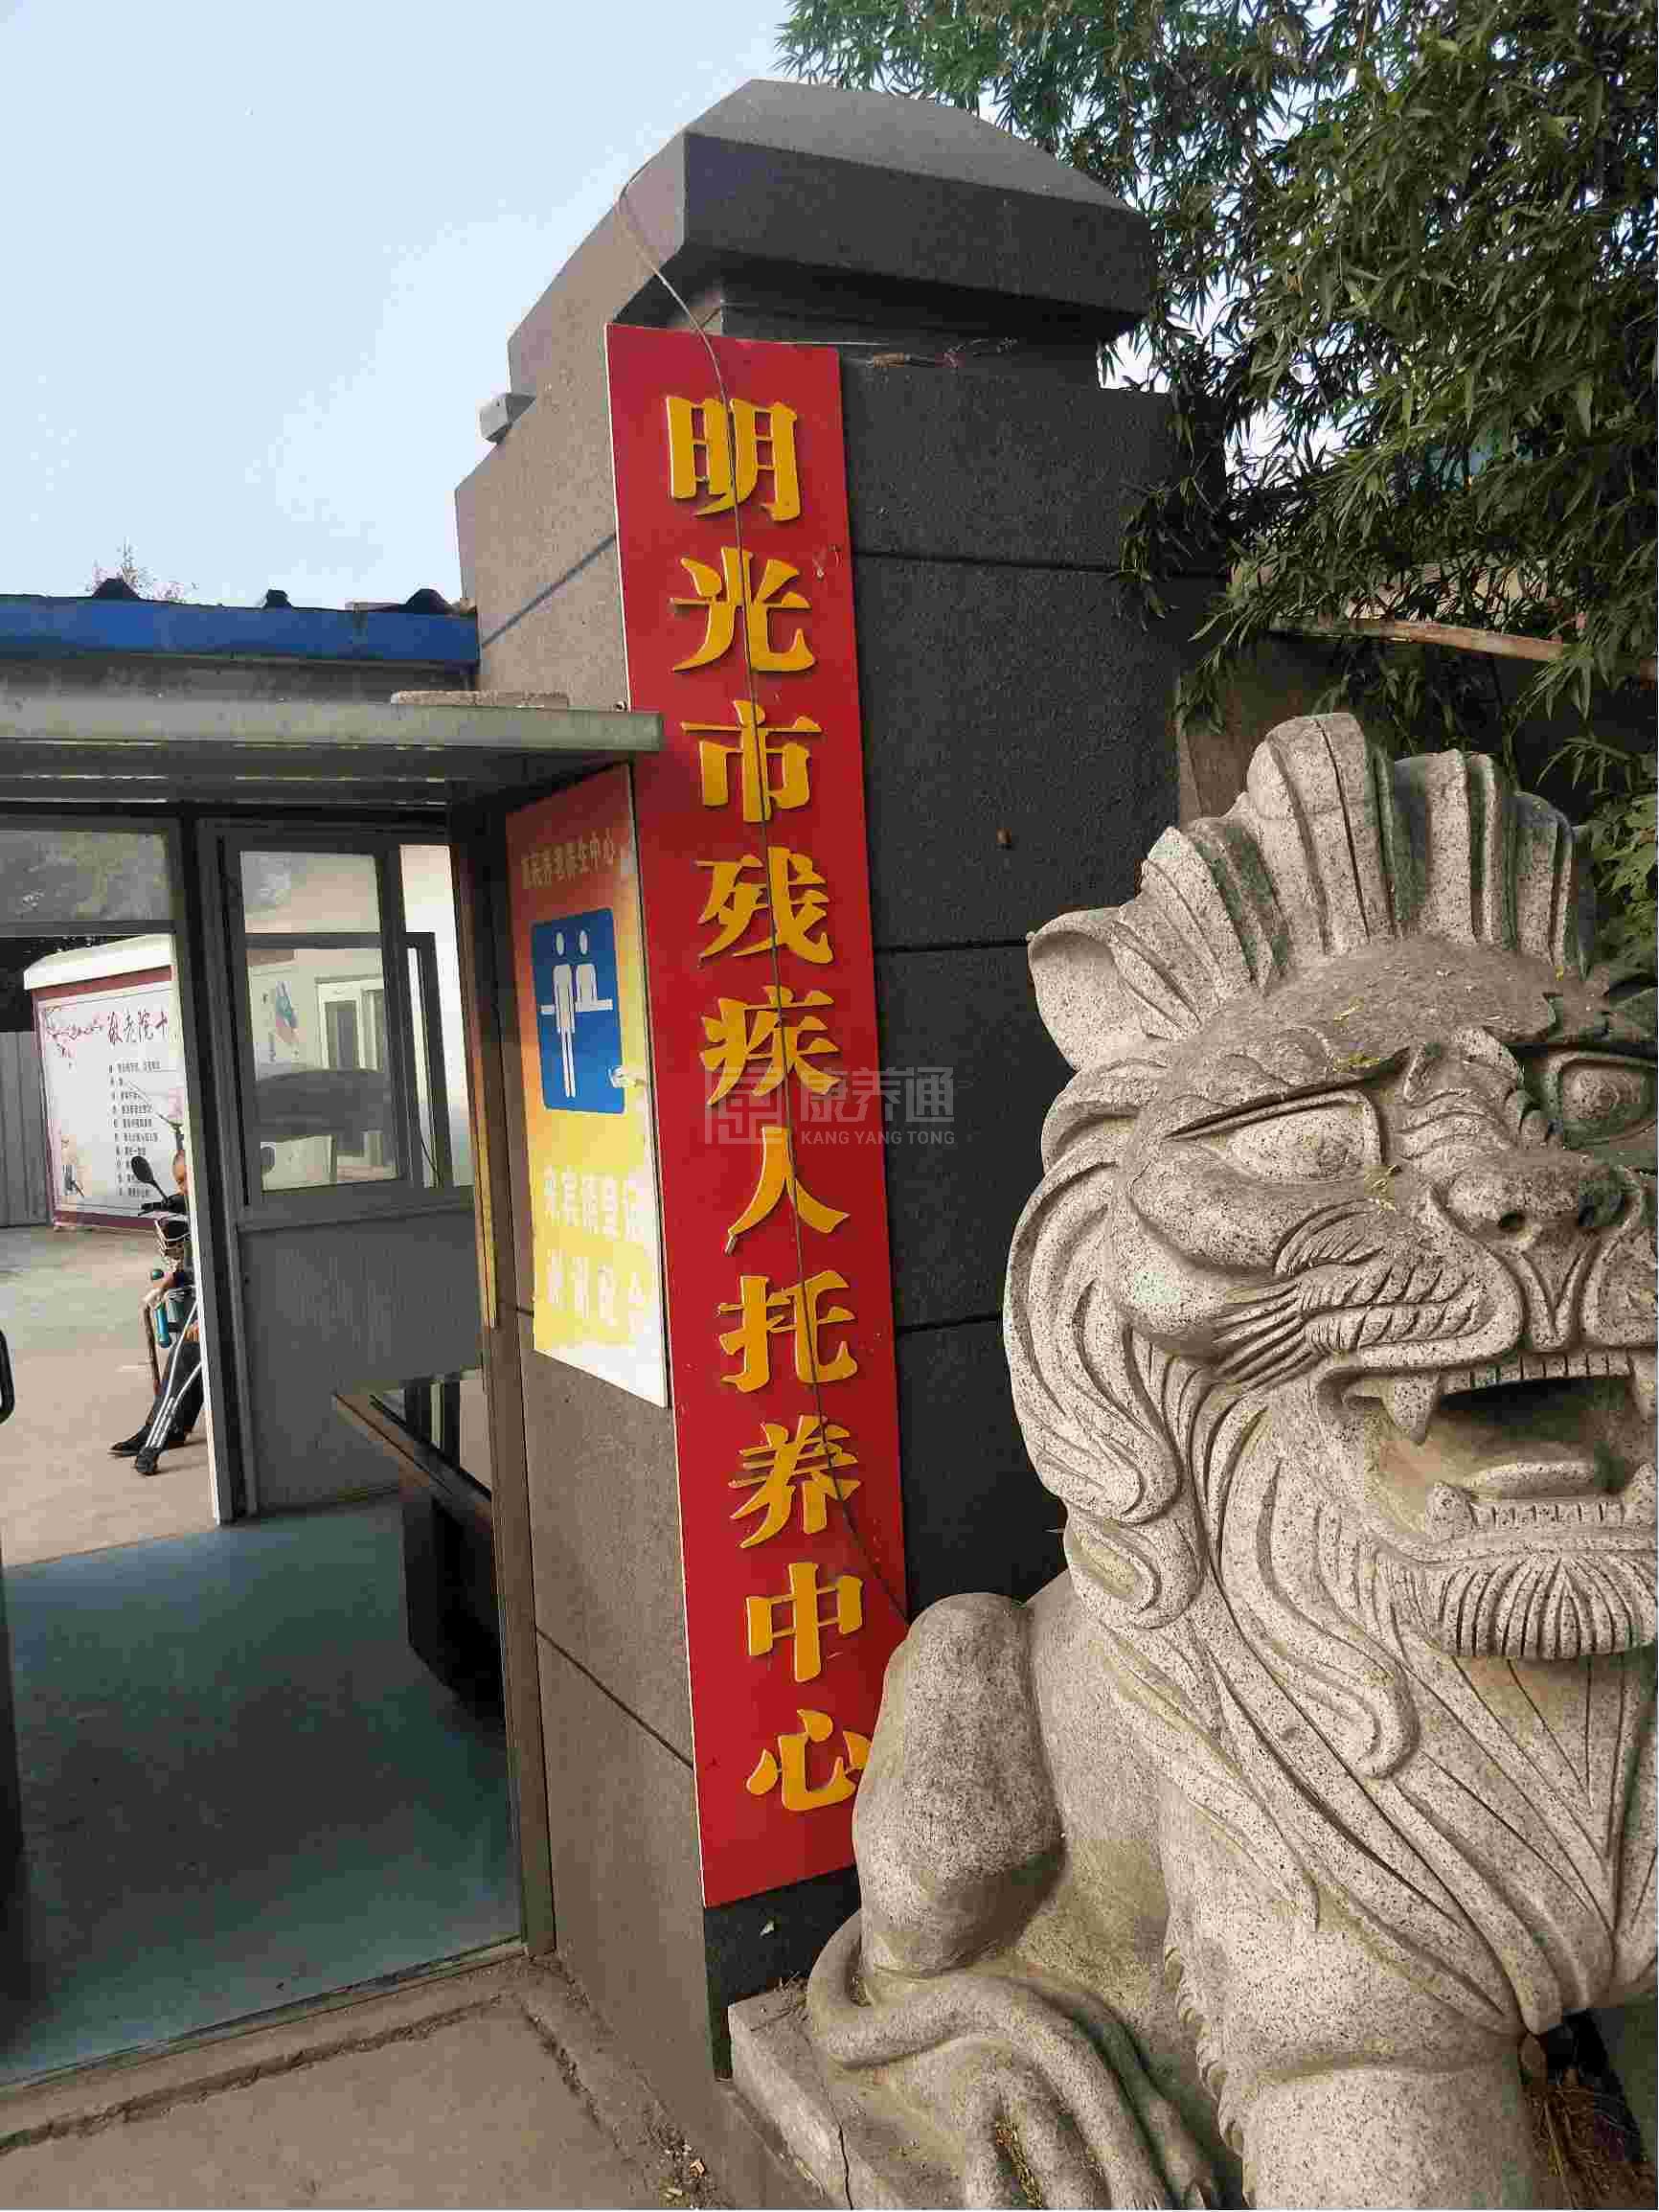 明光市惠民养老养生中心环境图-走廊